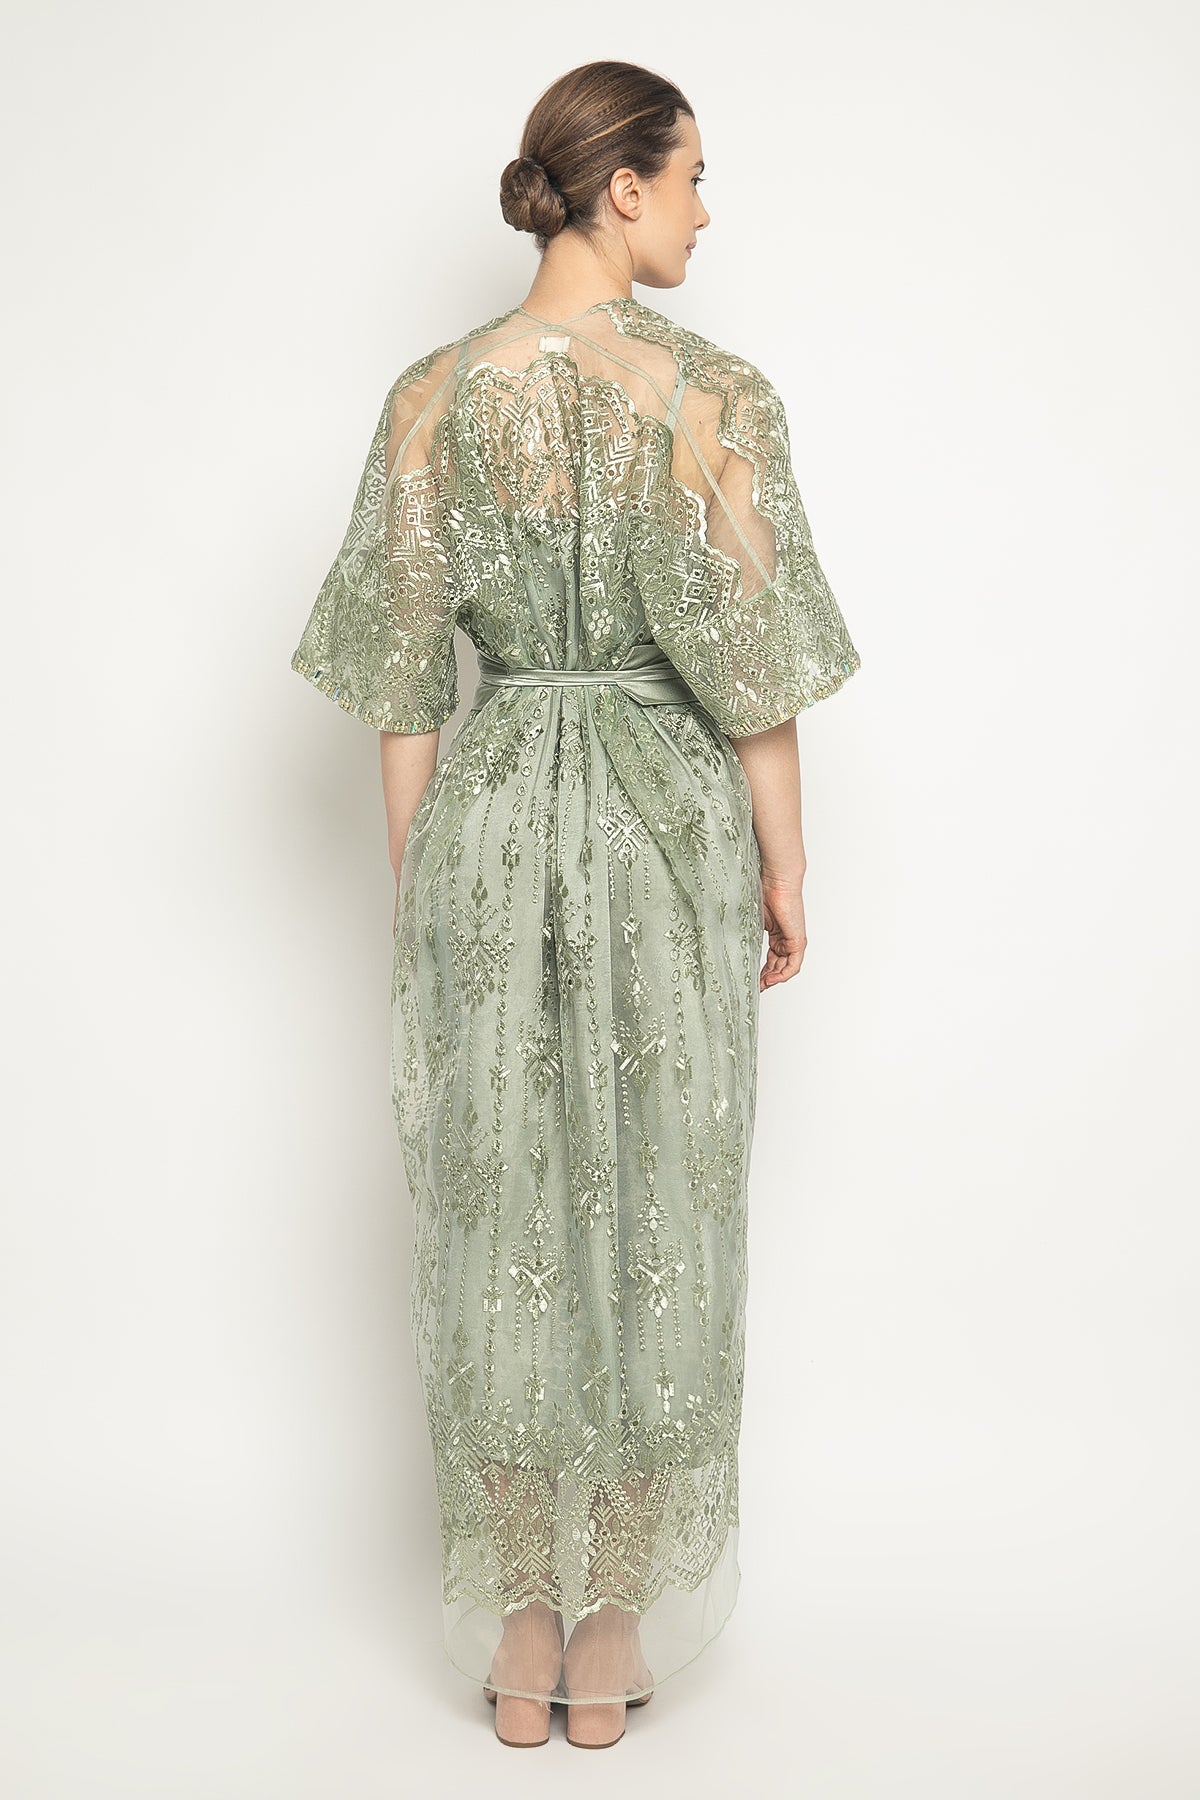 Hana Dress in Sage Green